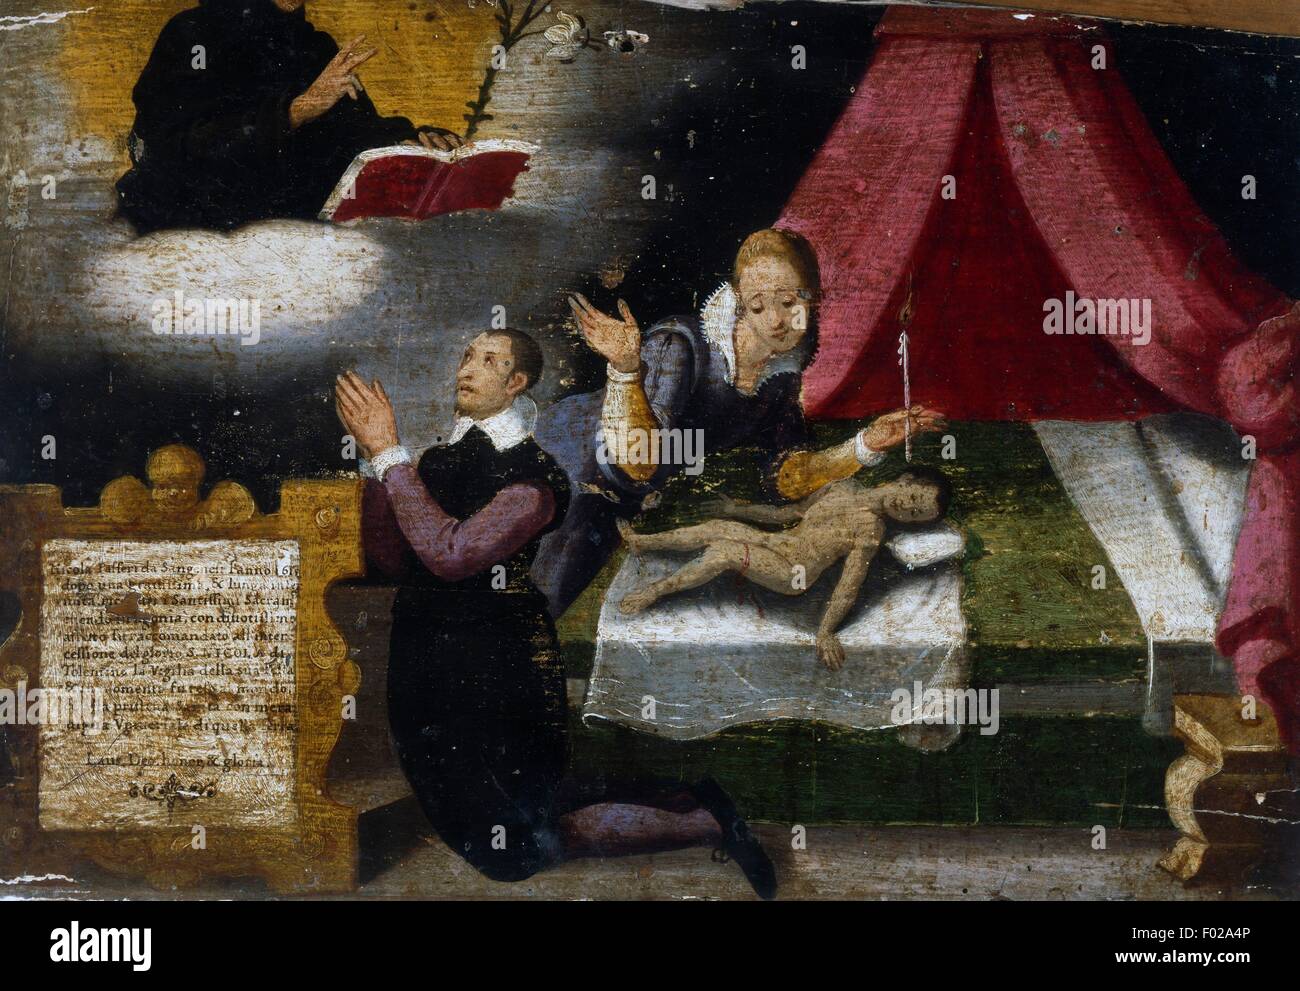 Enfant malade avec les parents, ex voto, Italie, 17e siècle. Banque D'Images